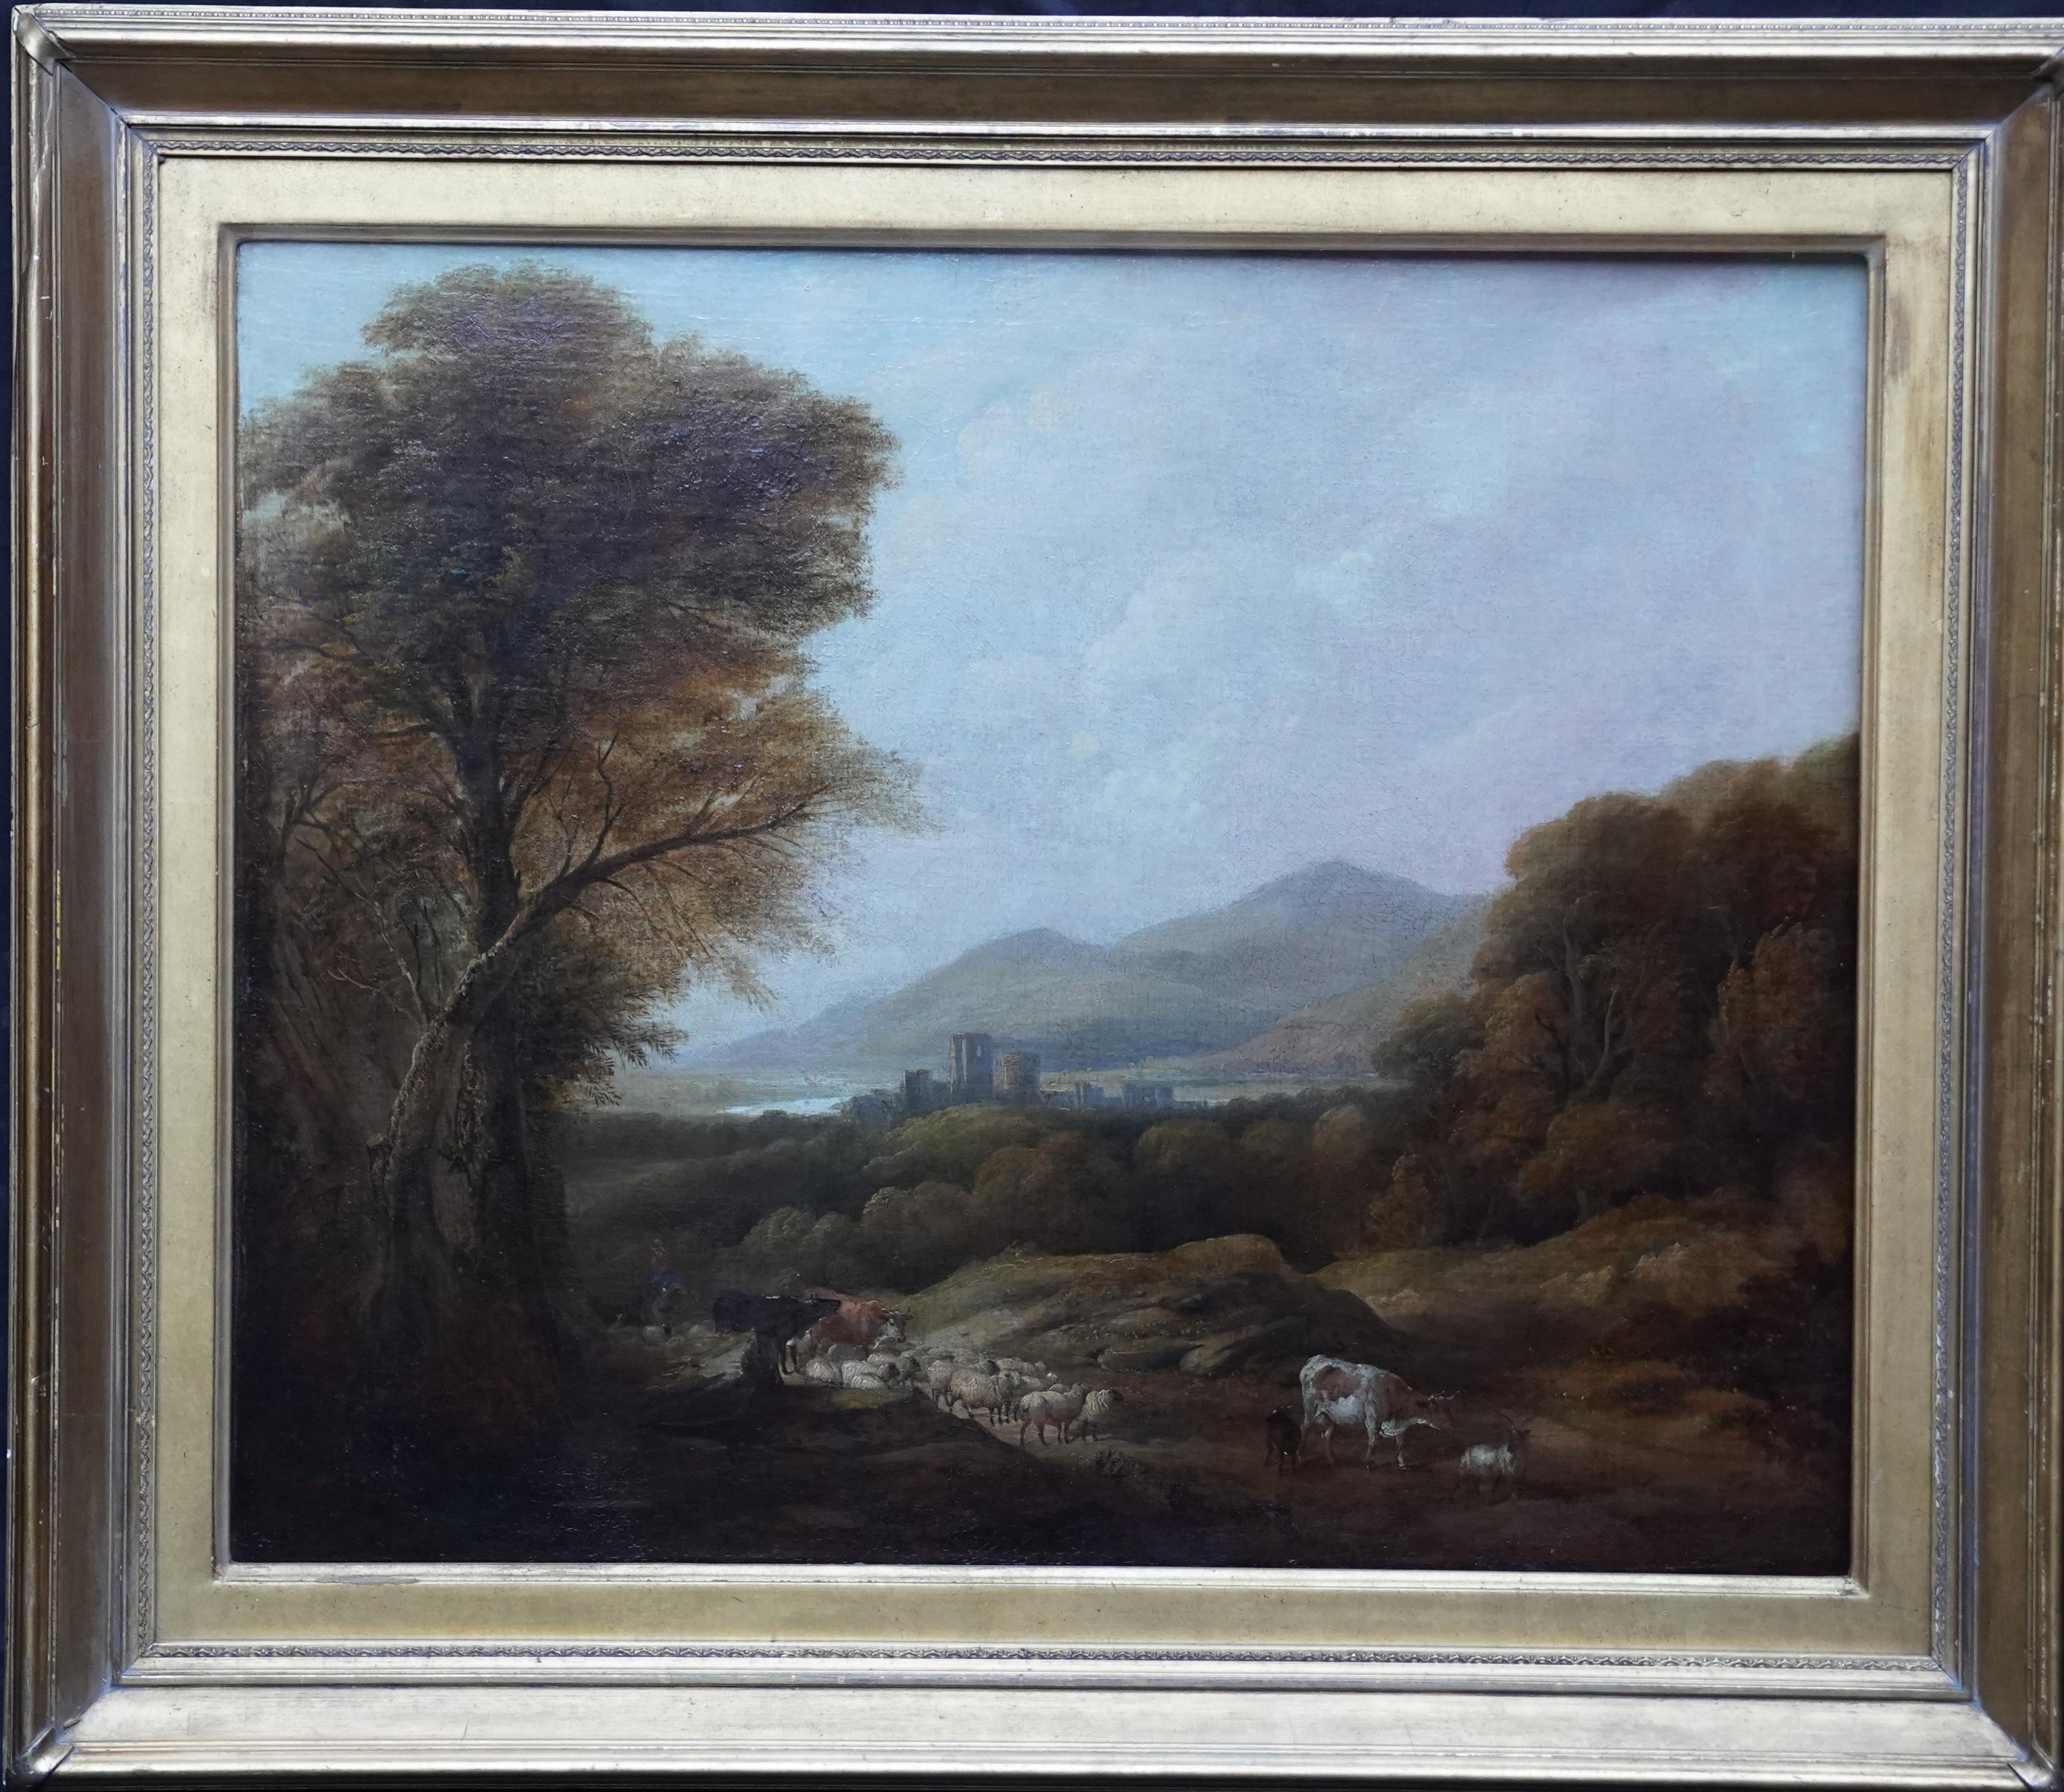 Ganado y pastor en un paisaje - Pintura al óleo de paisajes del arte victoriano británico